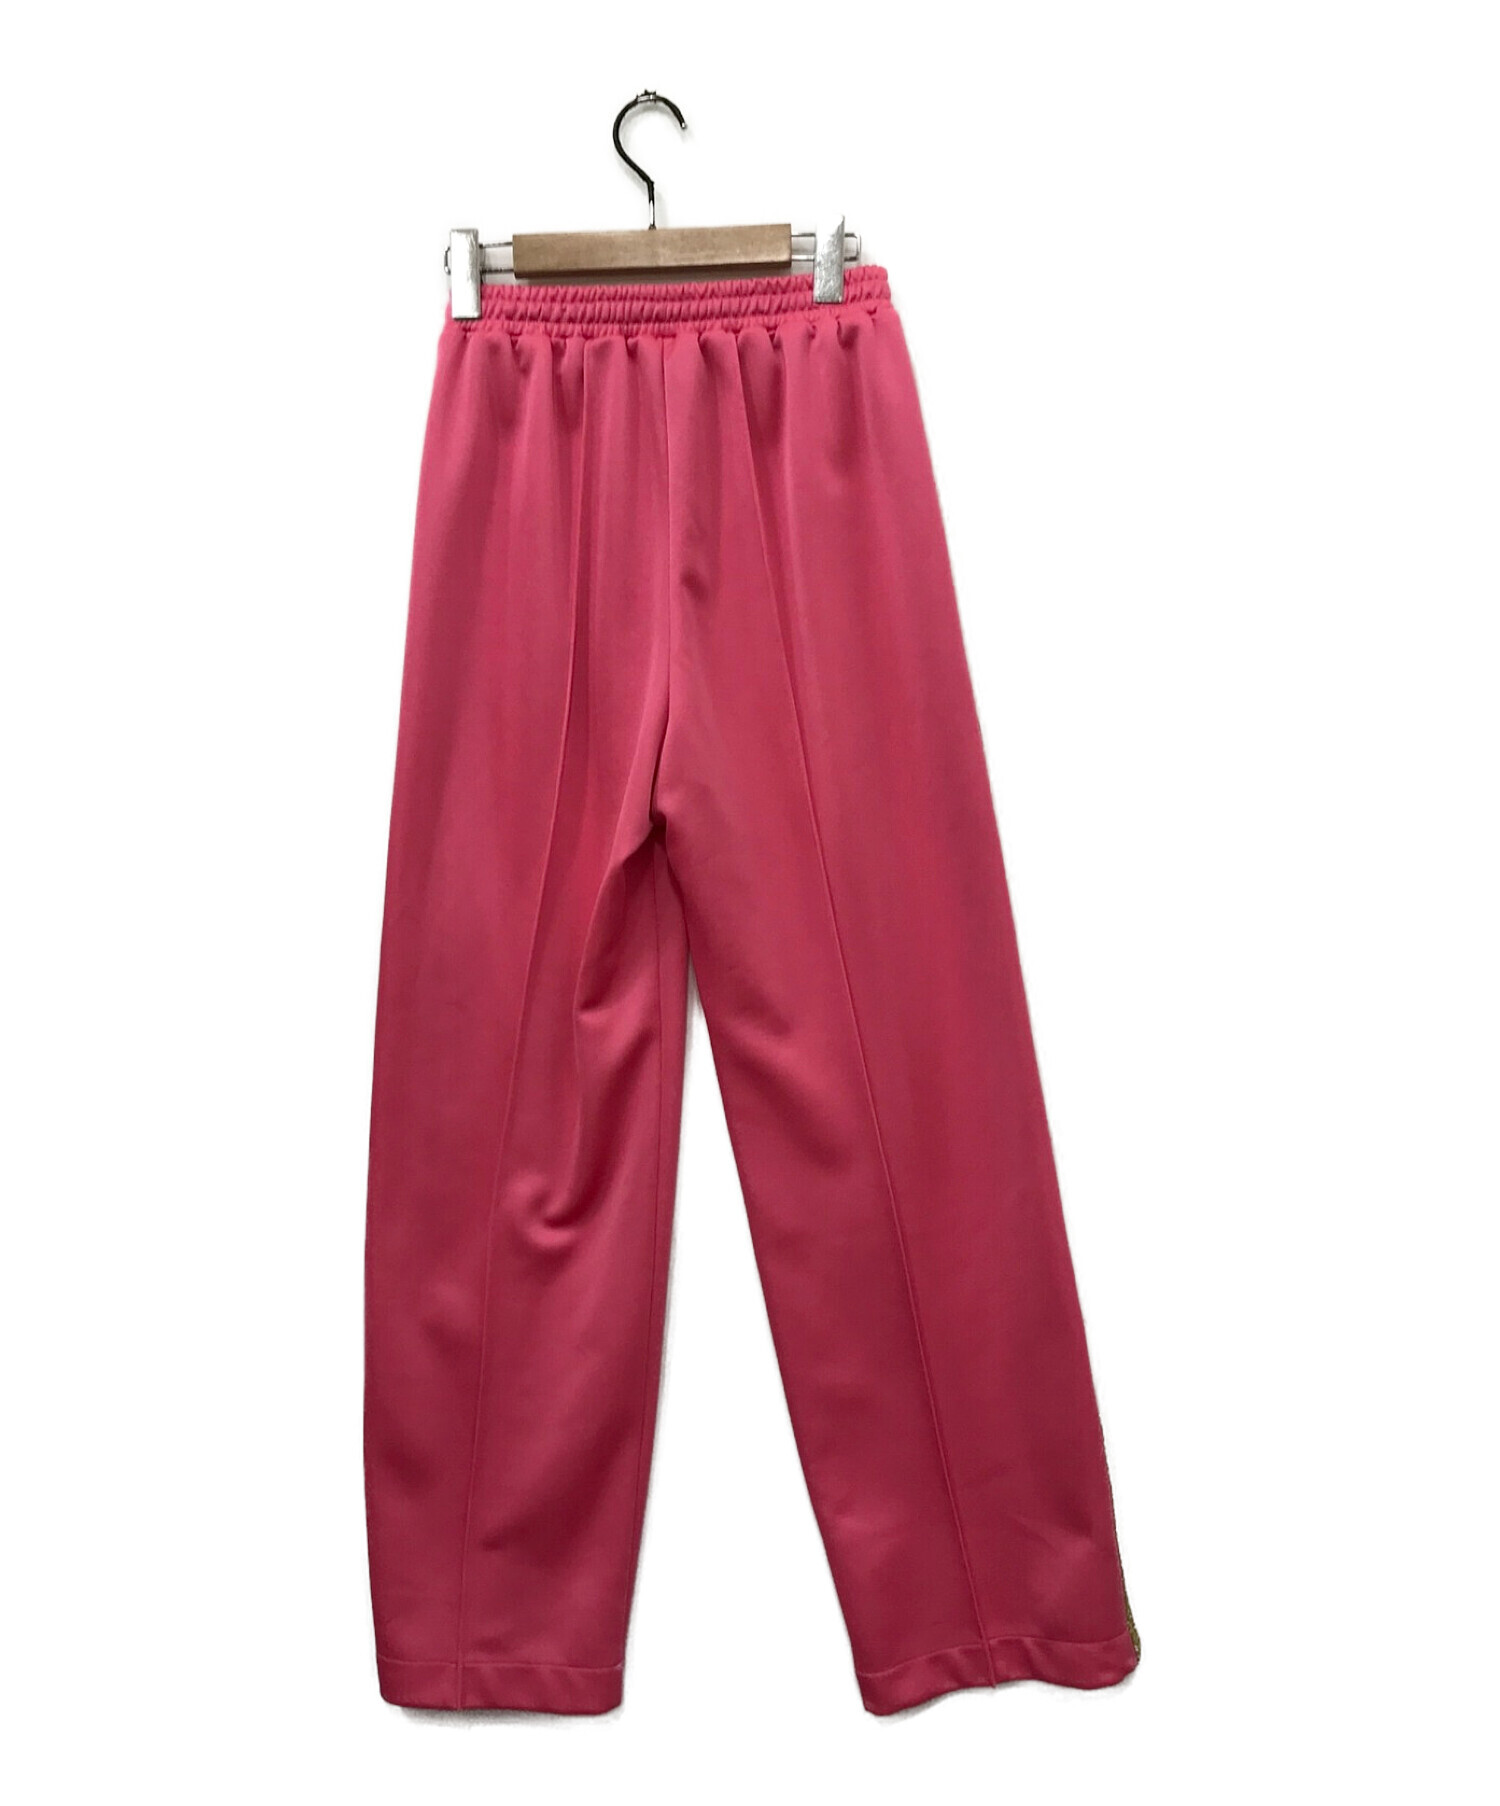 MAISON SPECIAL (メゾンスペシャル) スパークルサイドラインジャージパンツ ピンク サイズ:38